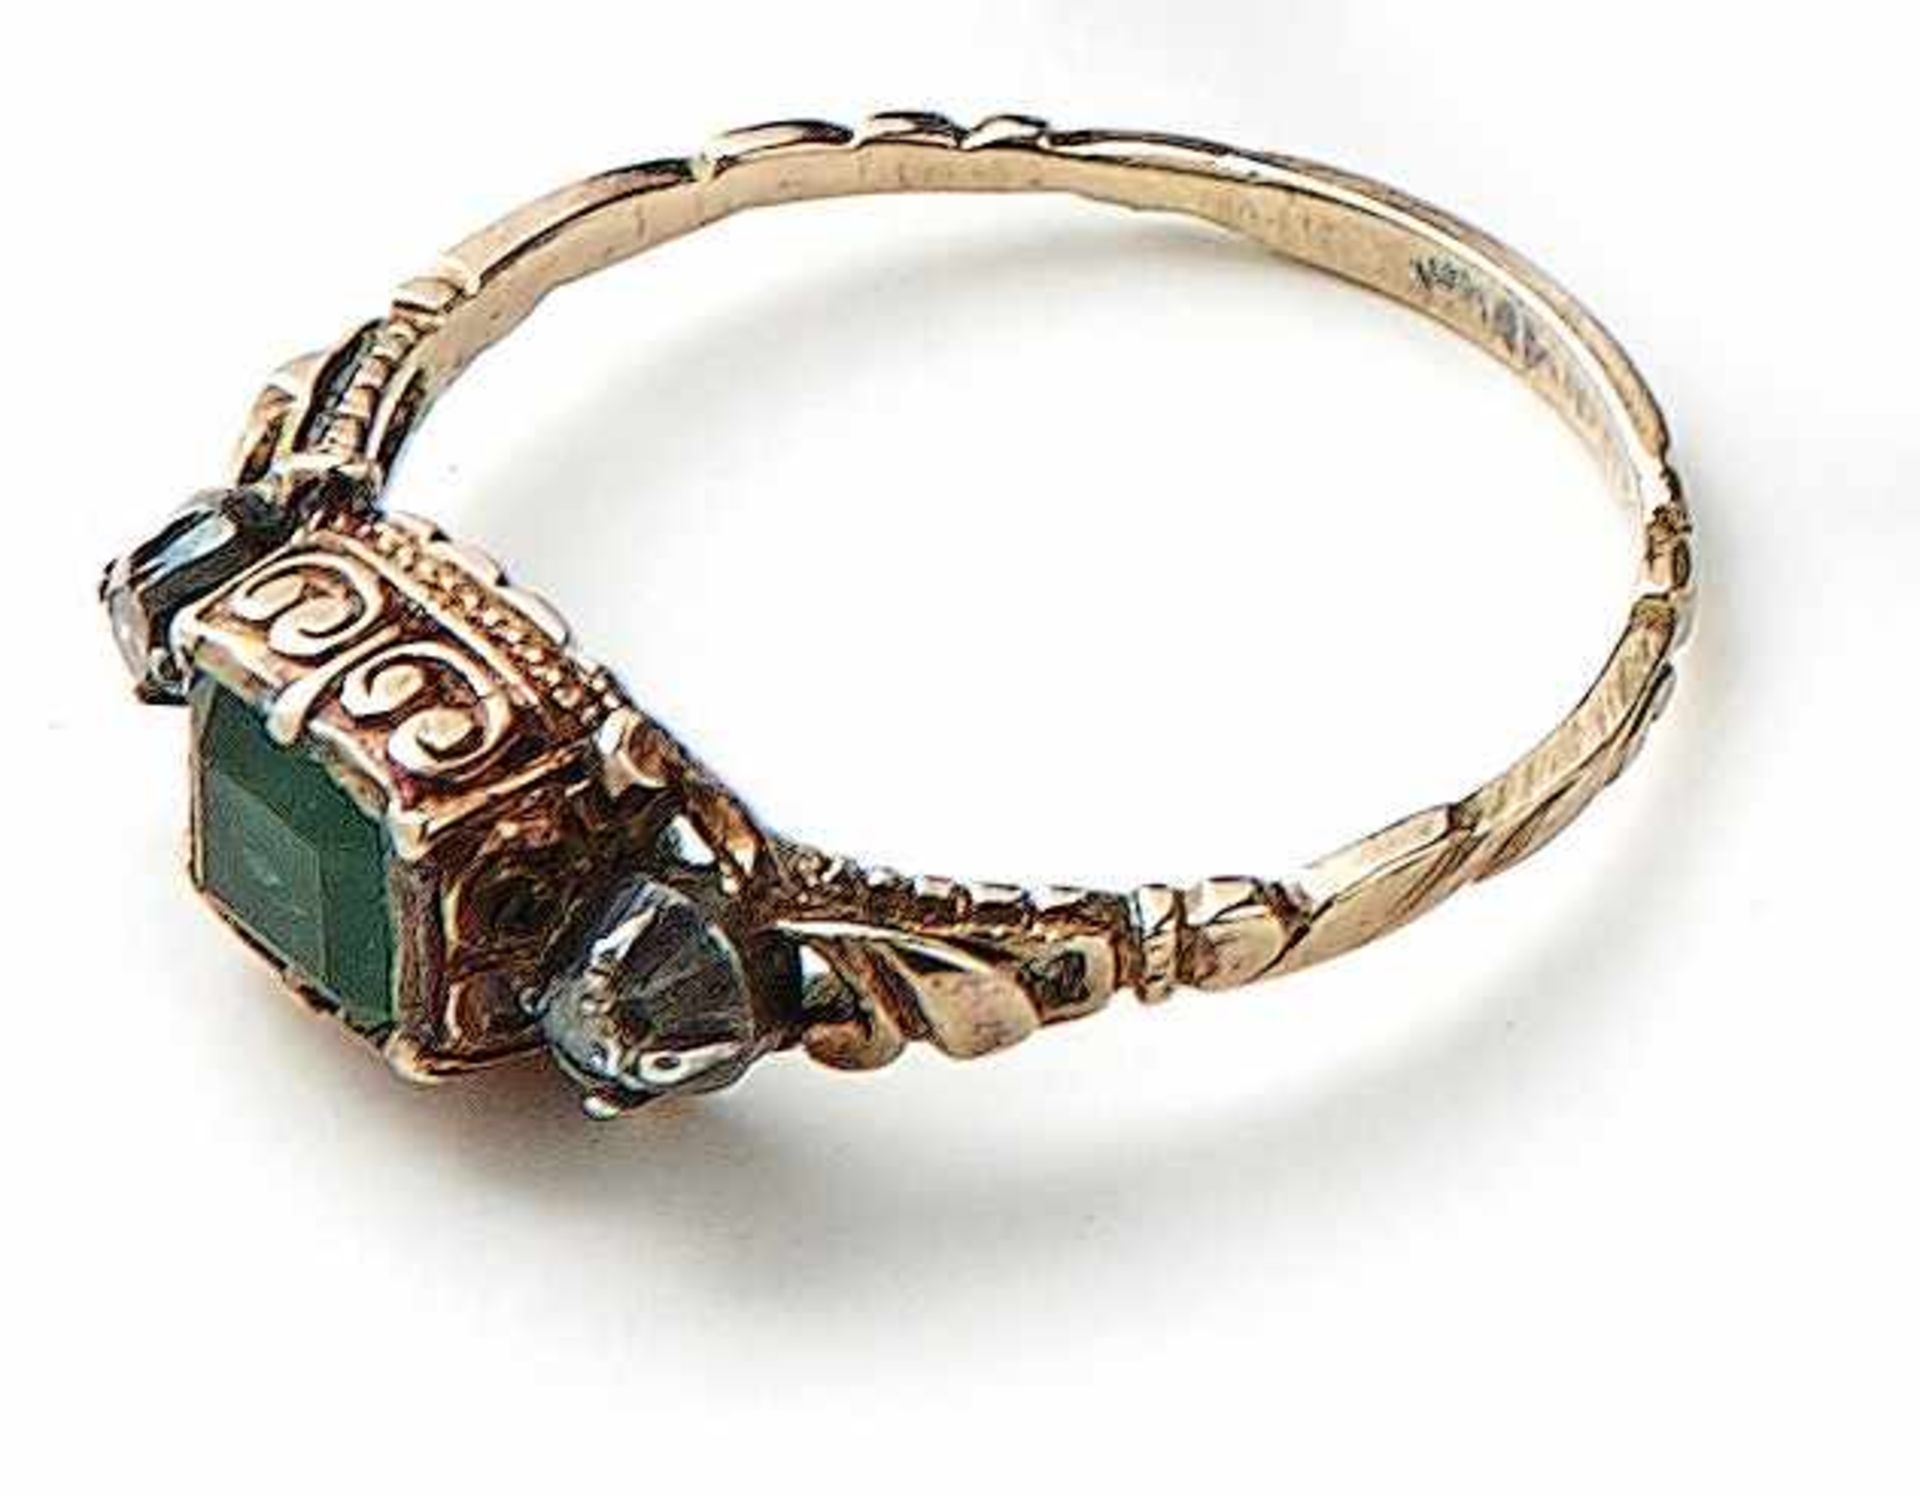 Smaragd-Diamant-Ring E. 18. Jh. Schmale, gravierte Schiene, schauseitig besetzt mit einem Smaragd